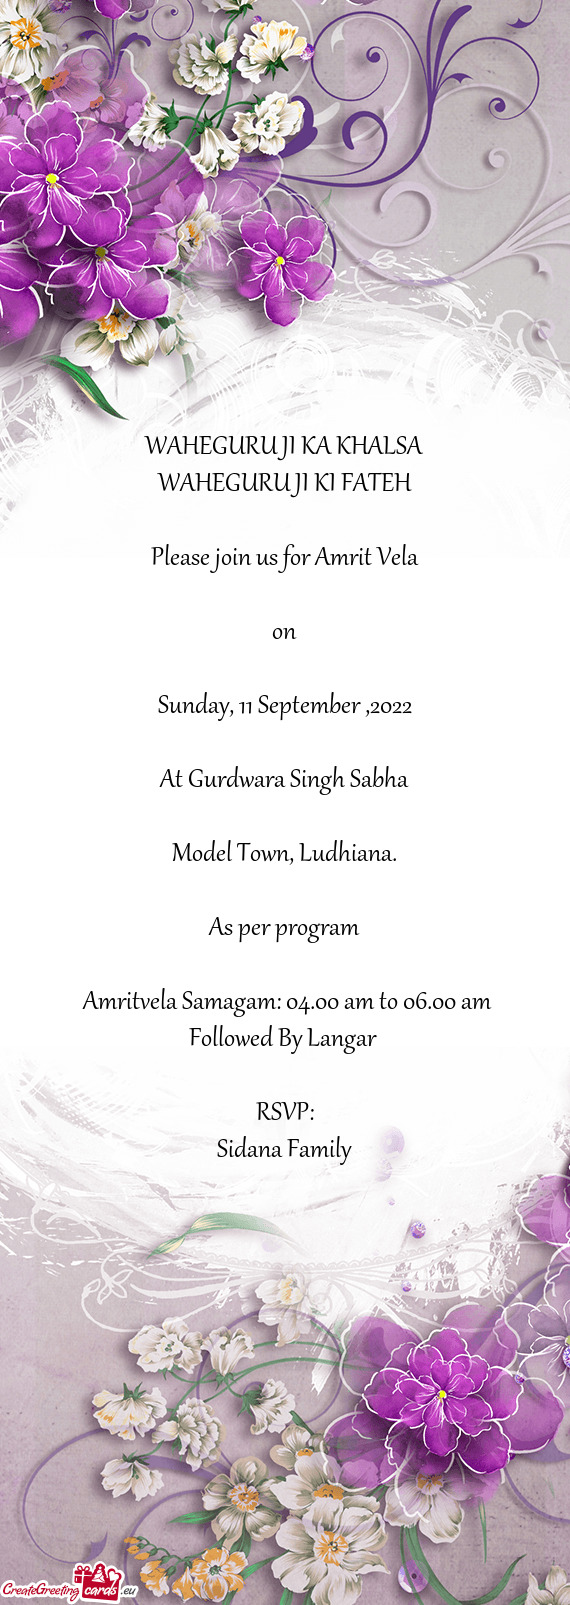 Please join us for Amrit Vela